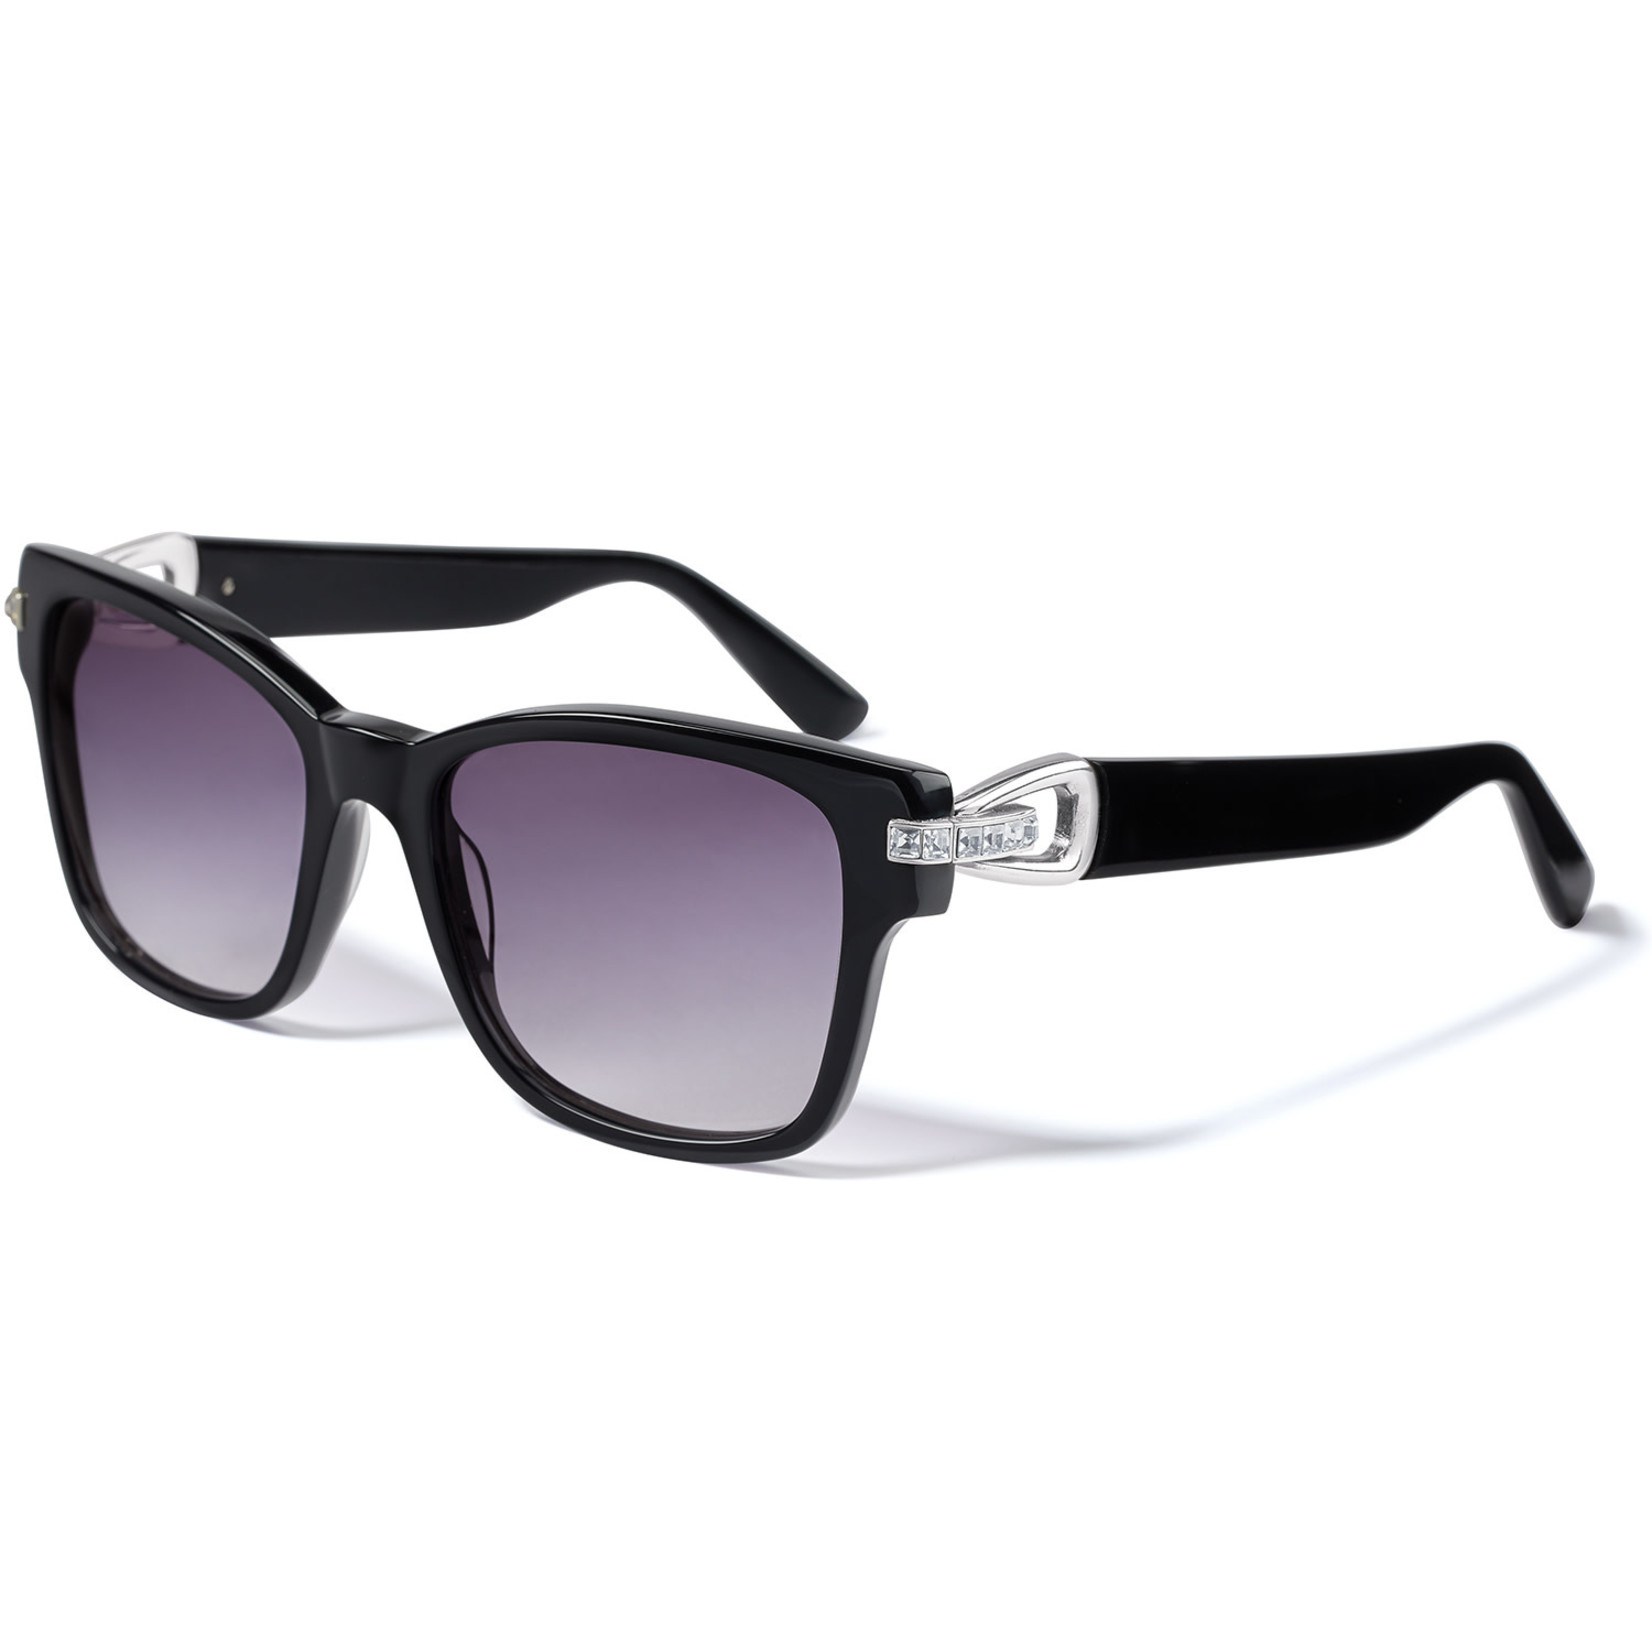 Brighton Spectrum Loop Sunglasses - Black, OS